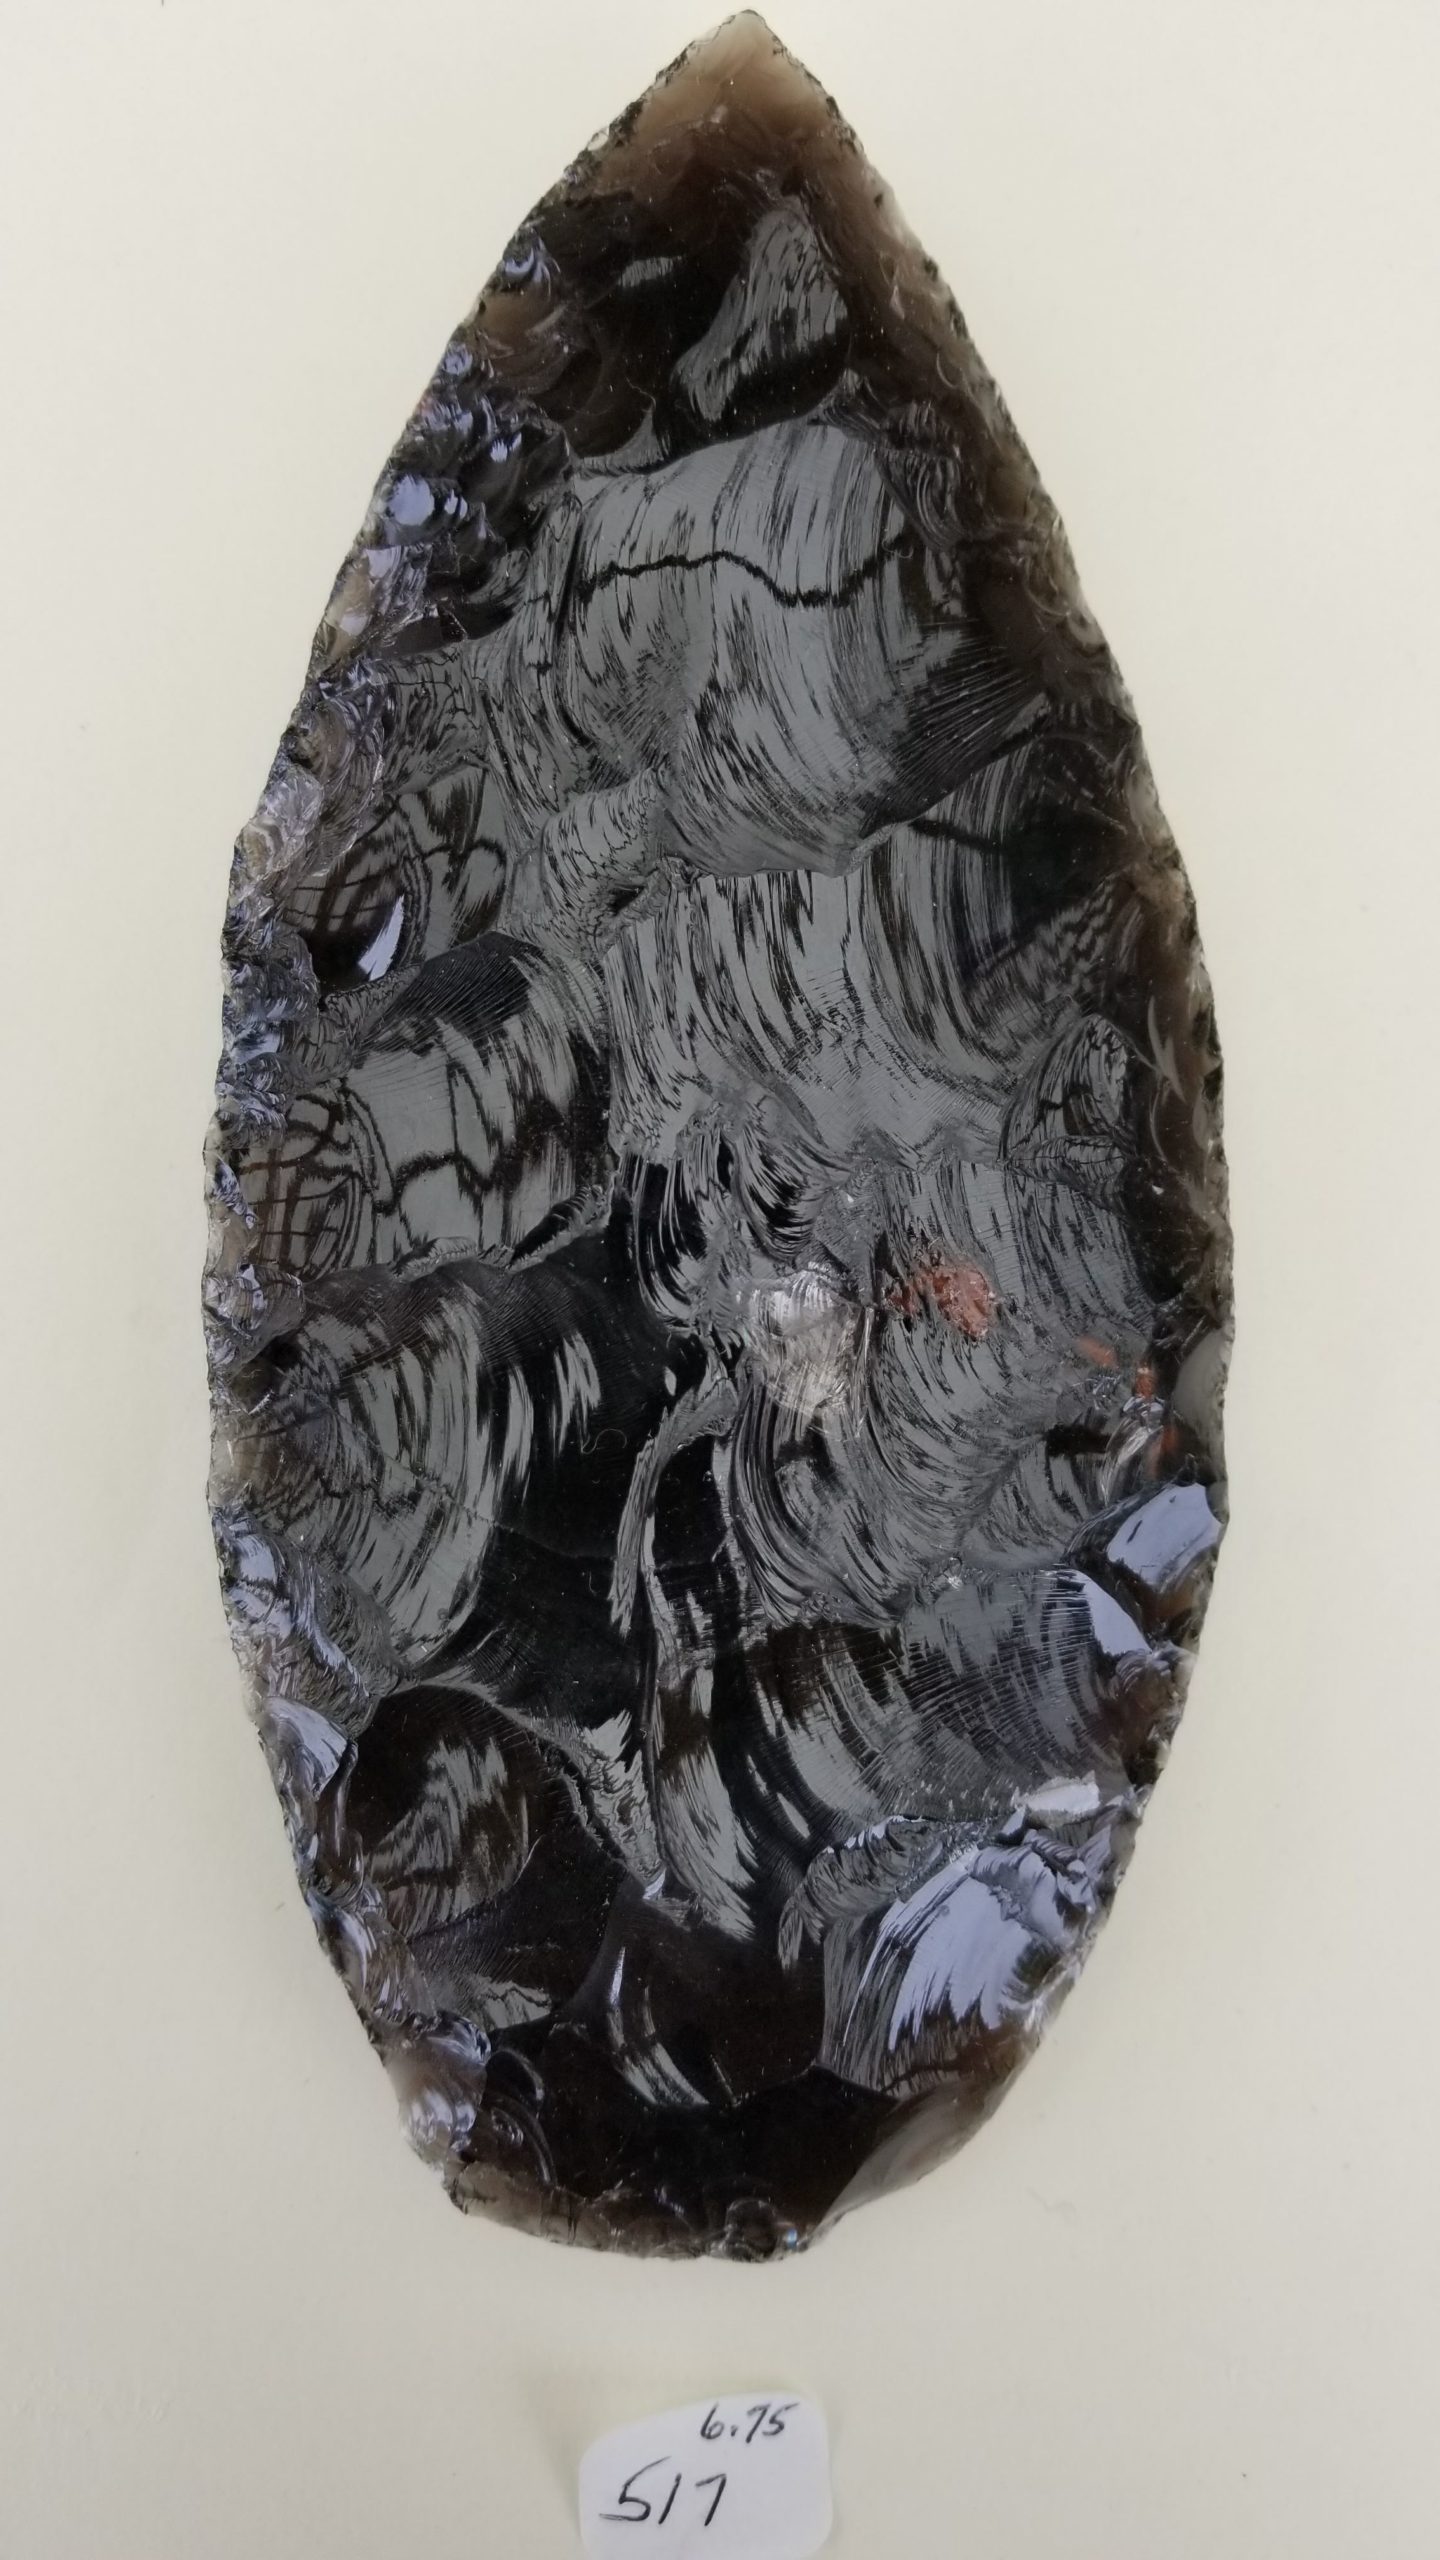 obsidian scalpel demonstration